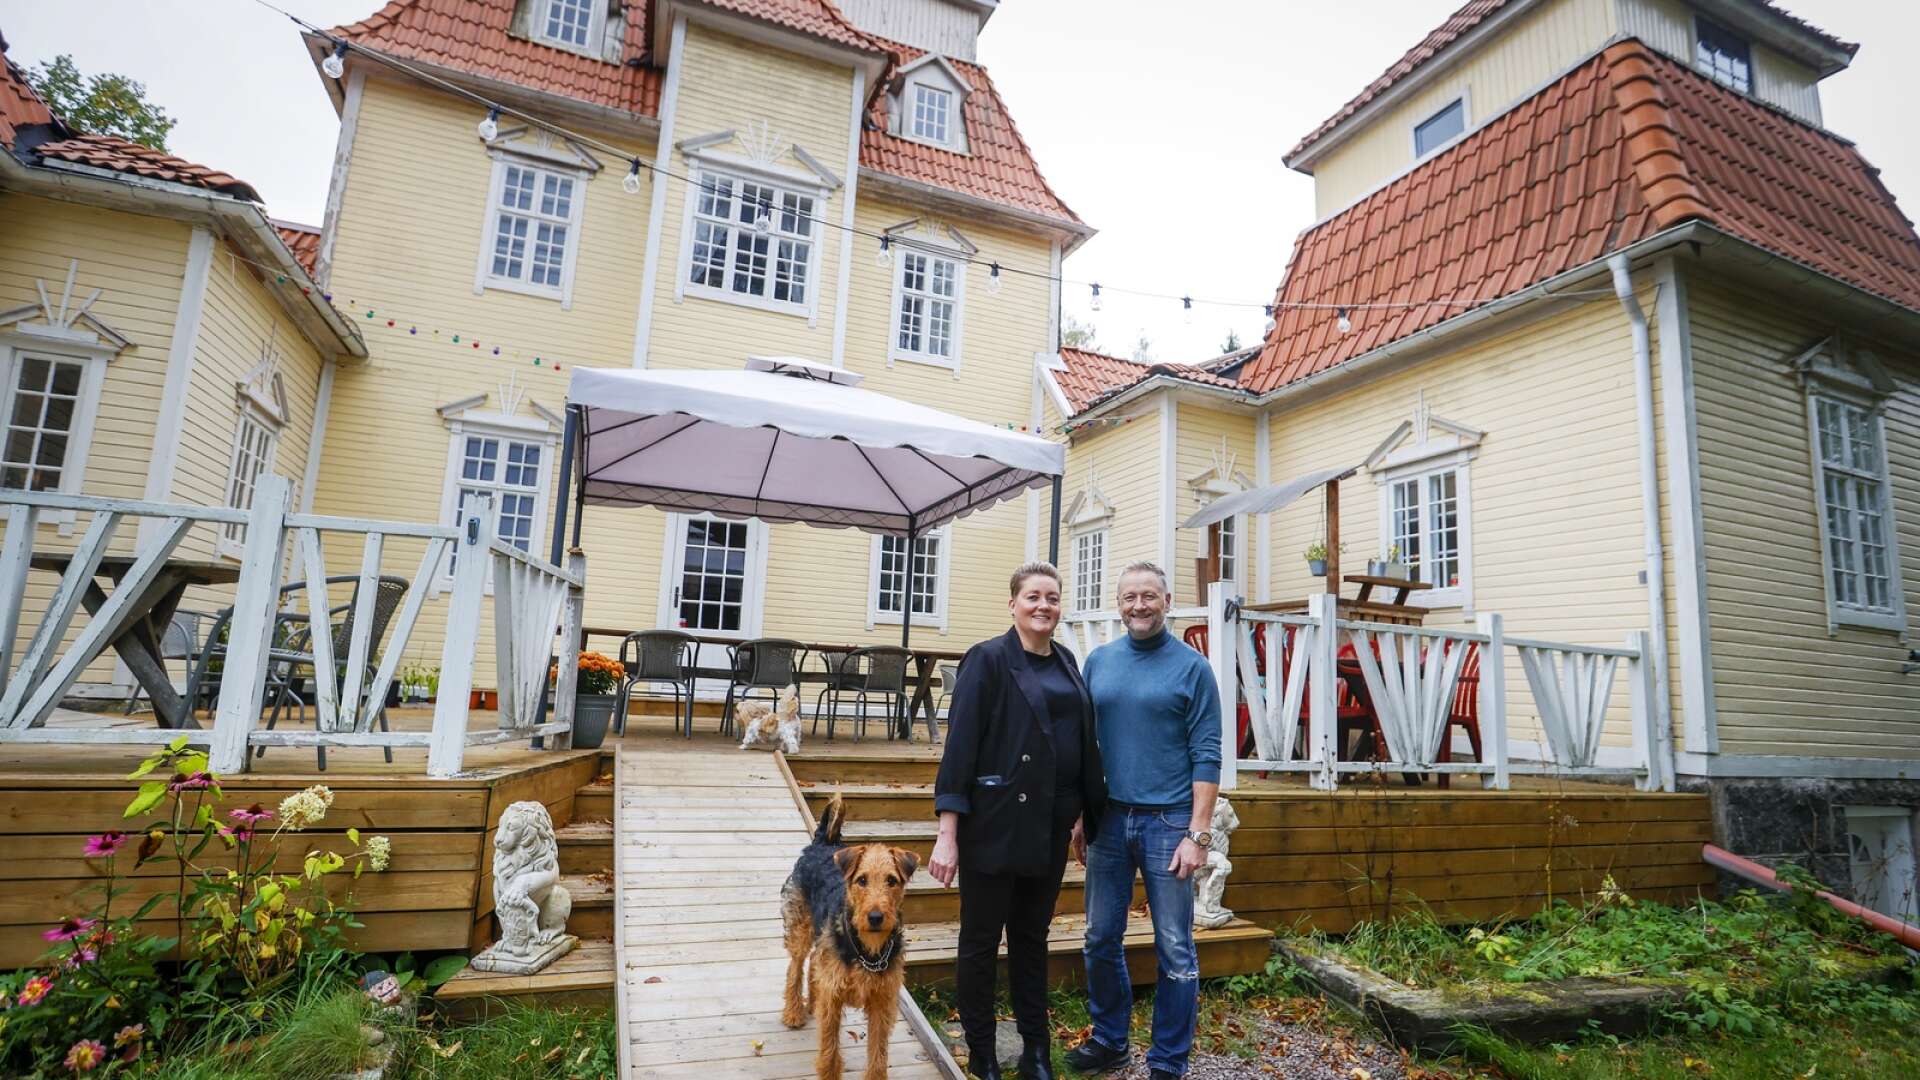 För ett år sedan öppnade Sylvia och Tommy Sønsterud-Møller gårdsbutik, café och bageri i 350 kvadratmeter stora Örtensborg norr om Molkom som byggdes 1919 av Gösta Tidlund-Meijerhielm som sägs ha varit oäkta son till Oscar II. Med på bilden är även hundarna Selma och Kira.